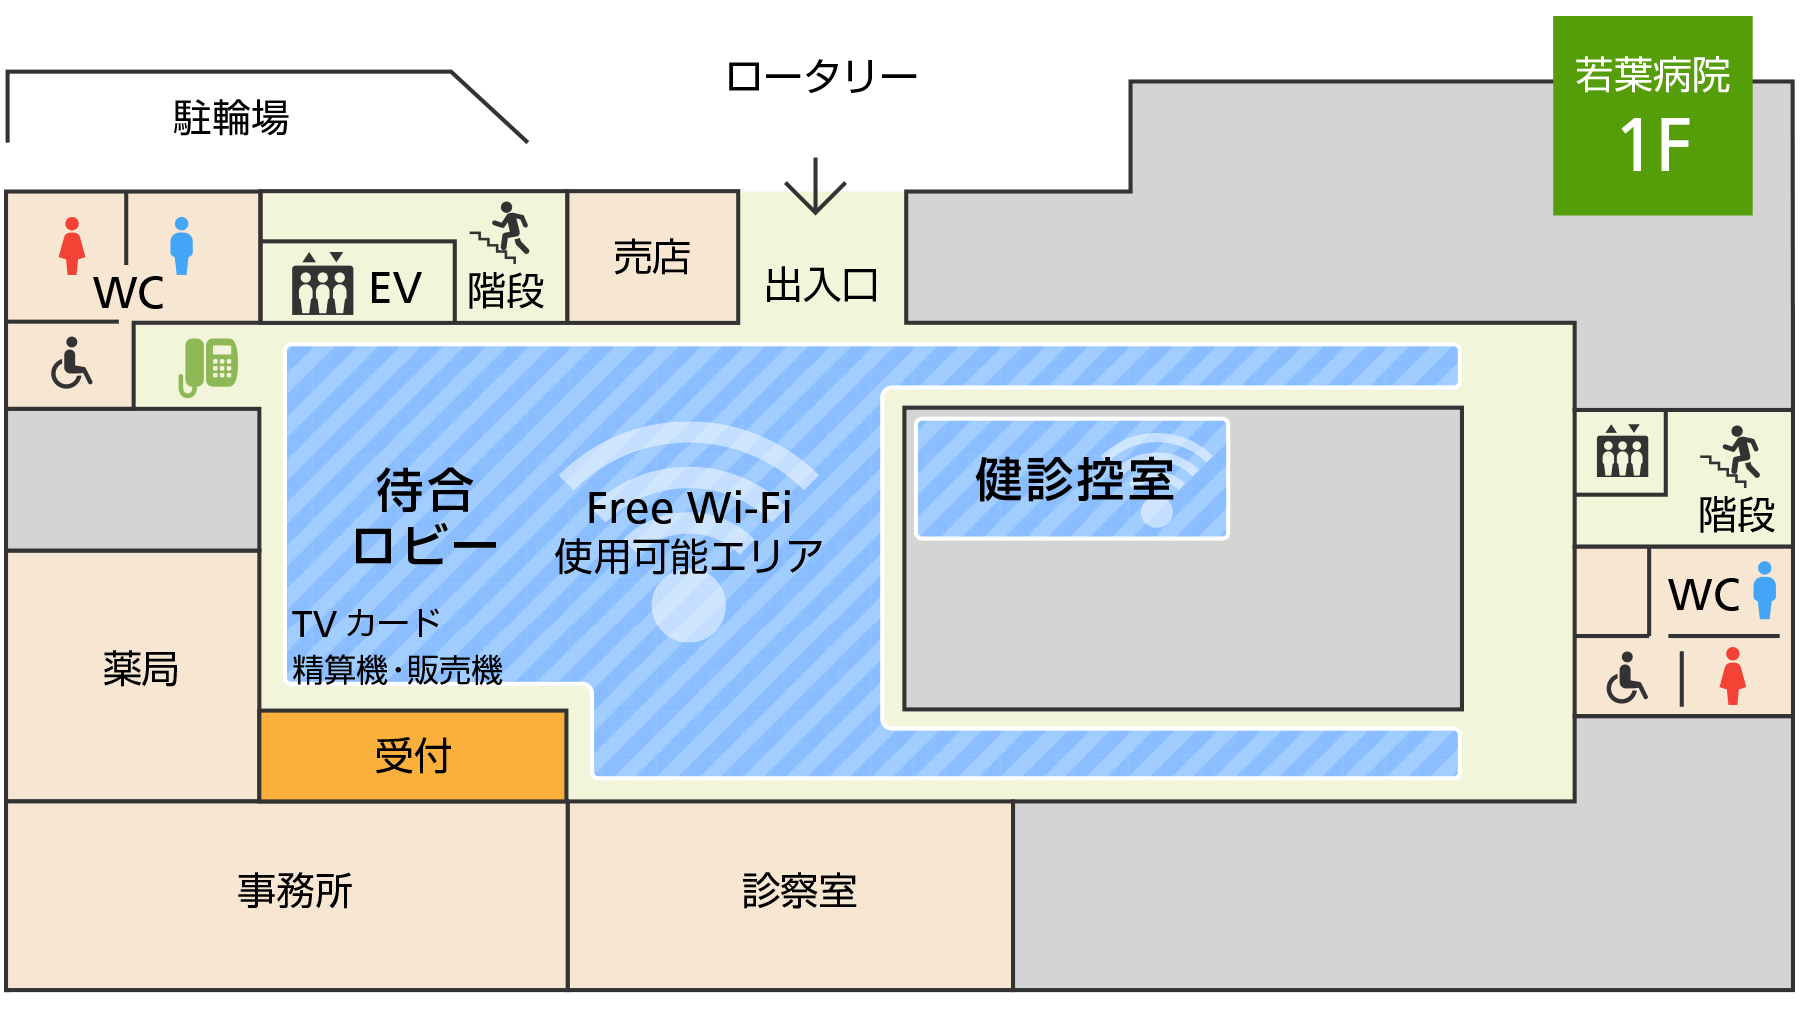 若葉病院 Free Wi-Fiエリア（1F）